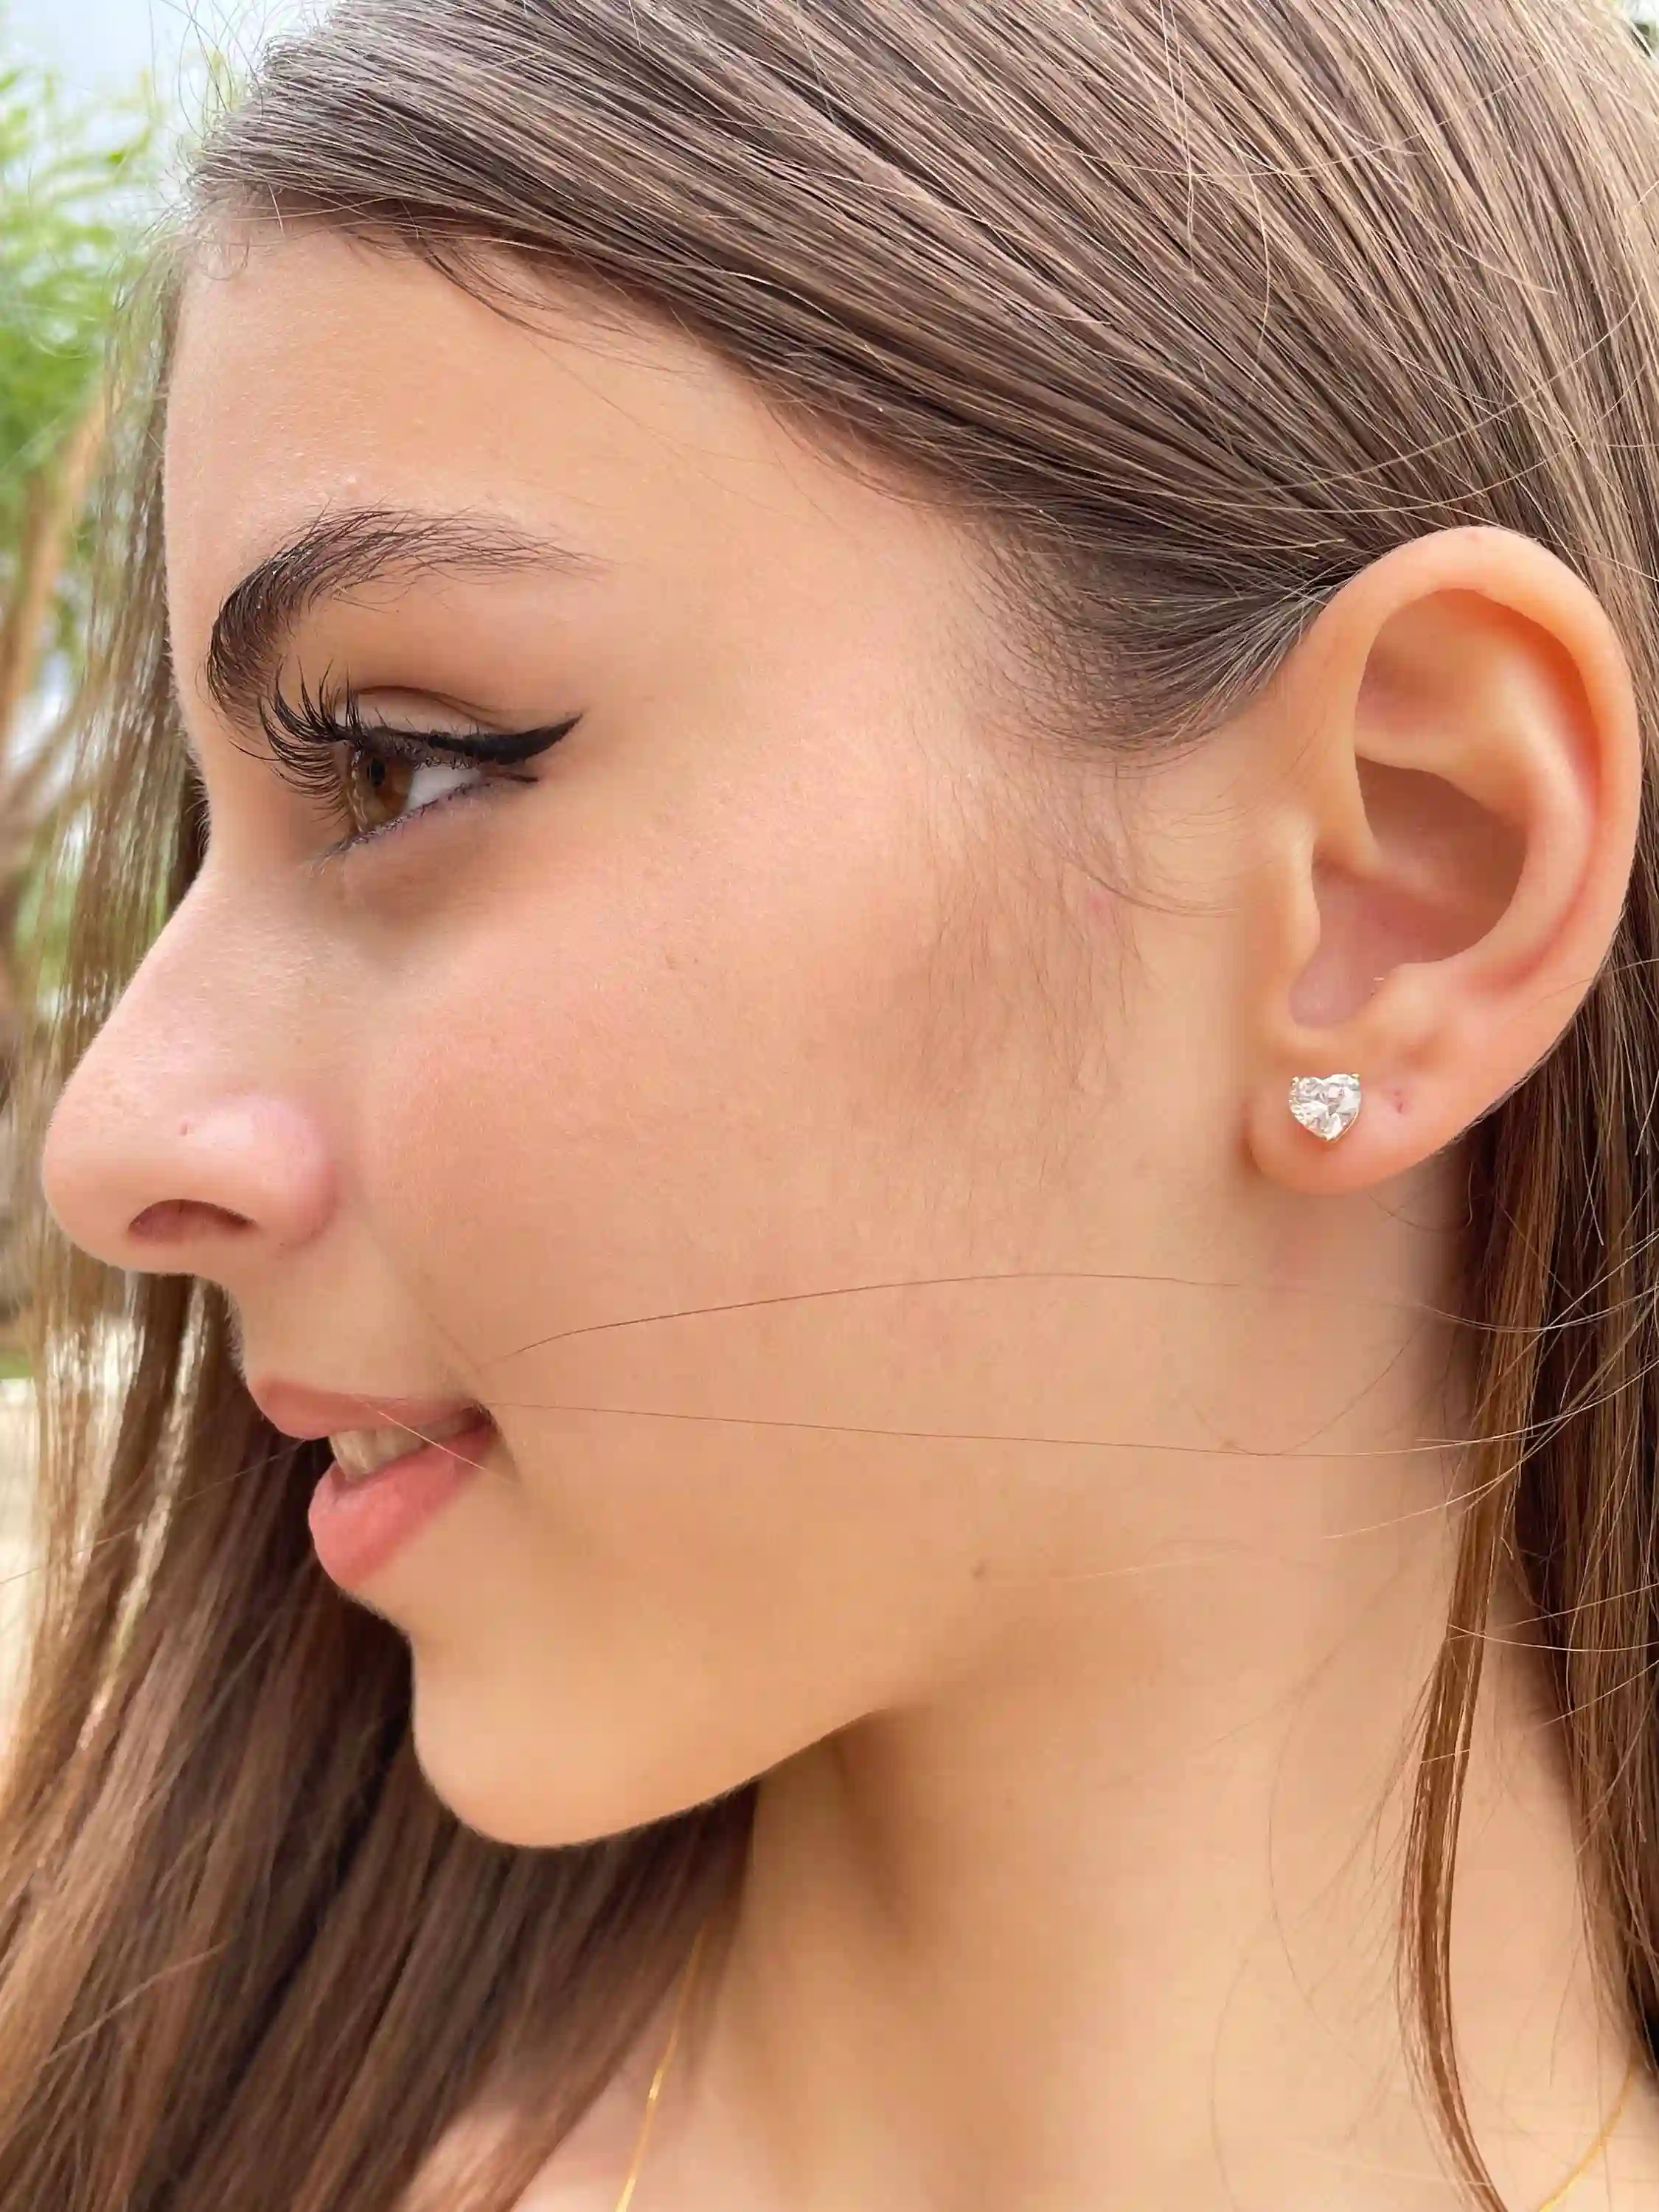 6.5mm - Heart Earrings Diamond Studs - 18k SOLID GOLD - Heart Shape Earrings - Anniversary Gift for her - Handmade Diamond Earrings 2ct 